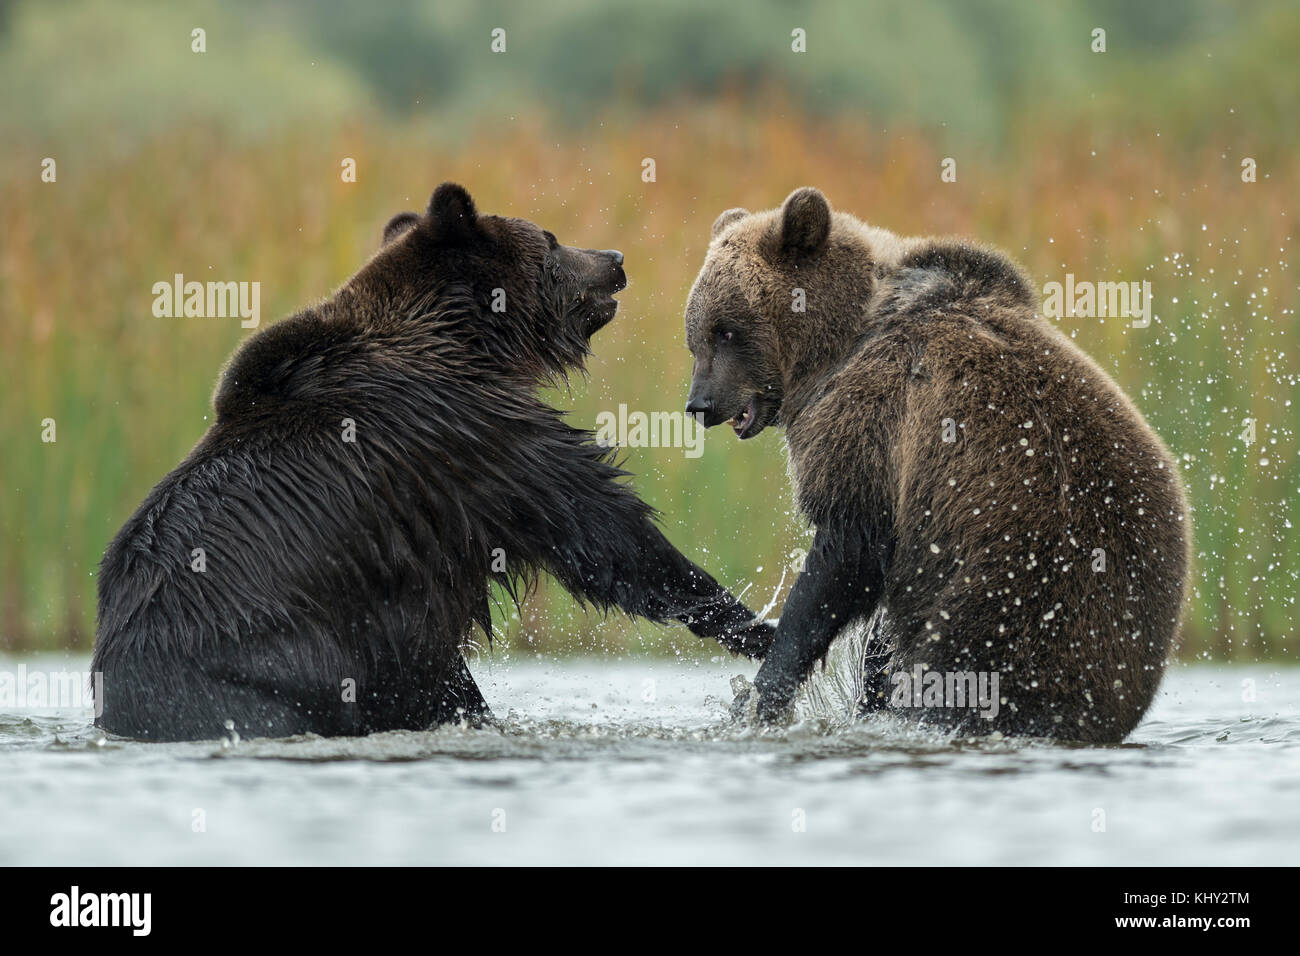 Les ours bruns d'eurasie ( Ursus arctos ) combats, luttant, en lutte, debout sur ses pattes dans l'eau peu profonde d'un lac, à l'Europe. Banque D'Images